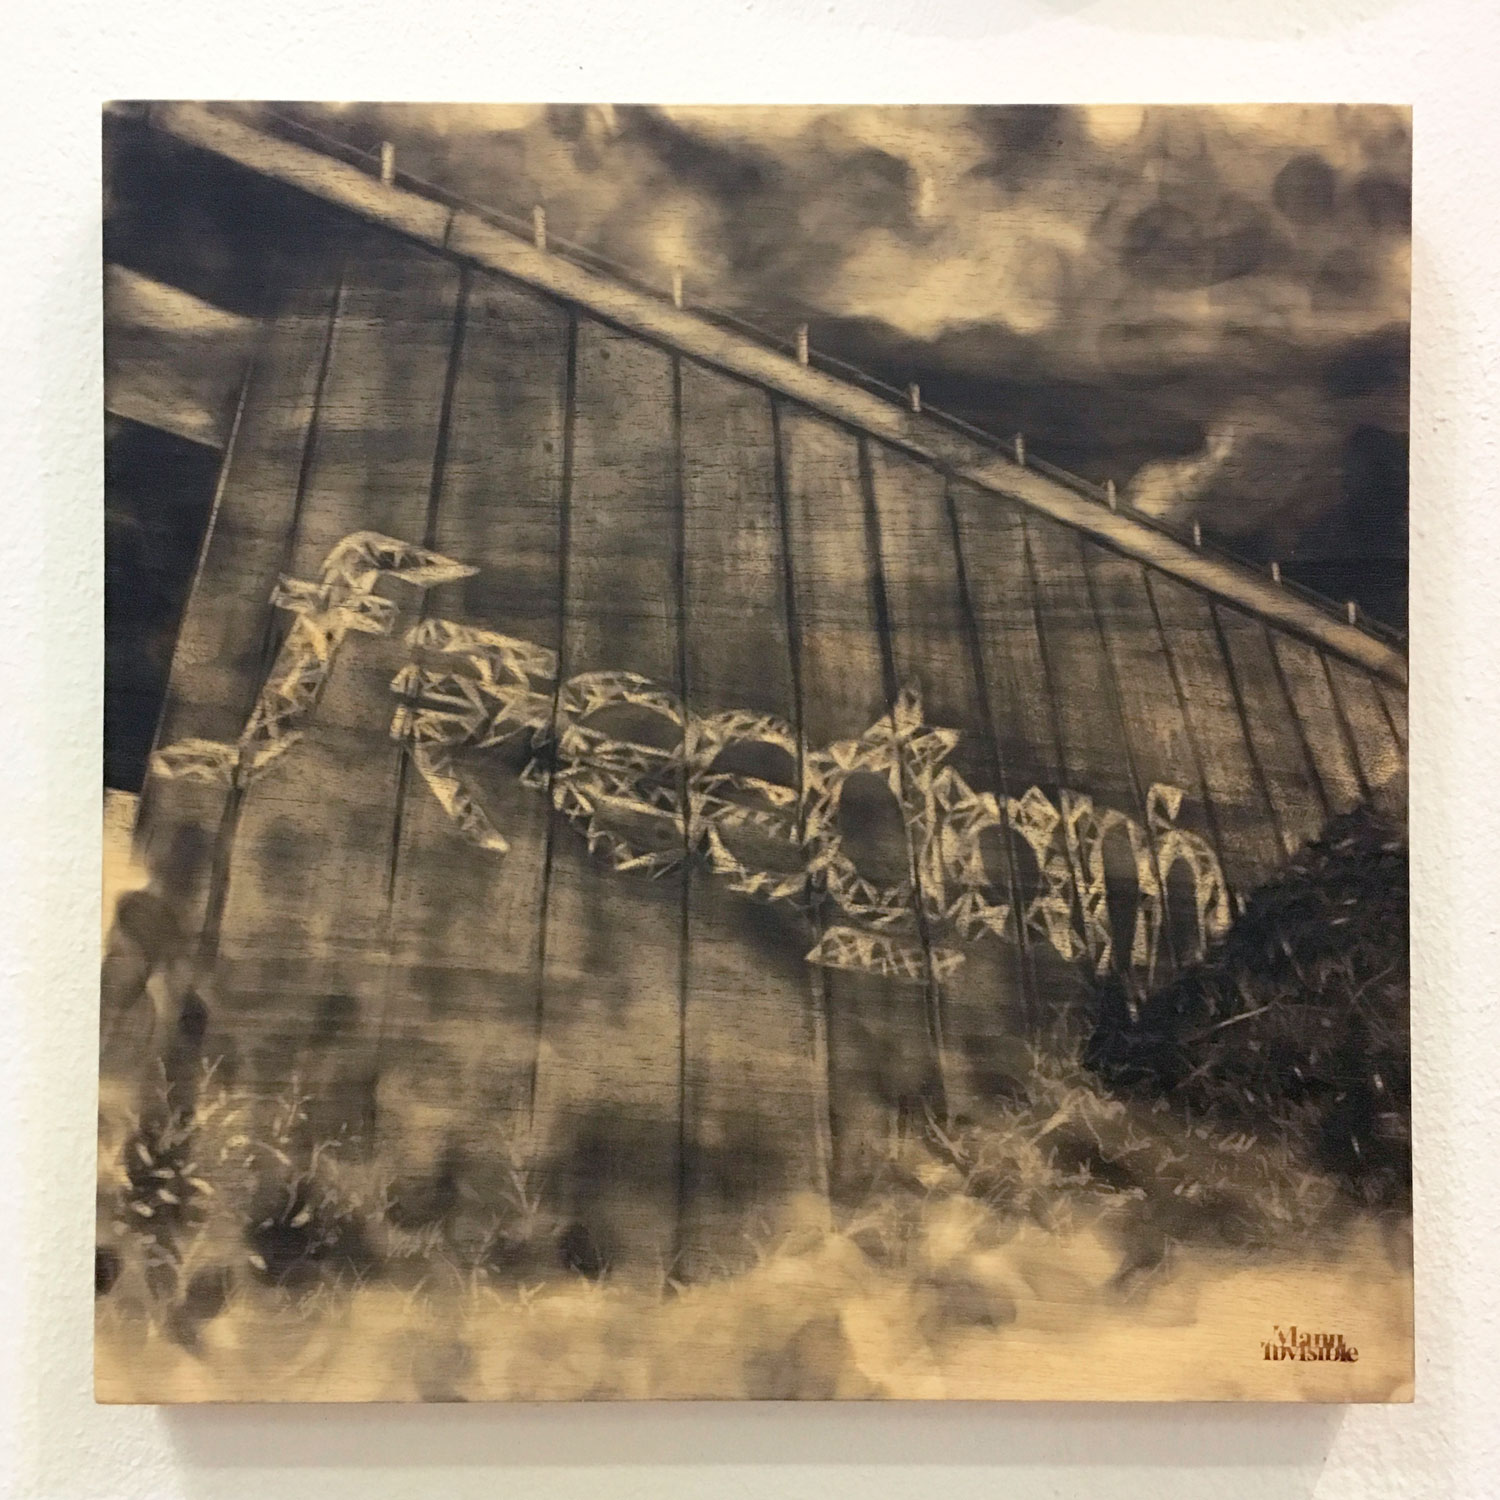 “Freedom” Fumée sur bois 40 x 40 x 4 cm 2018